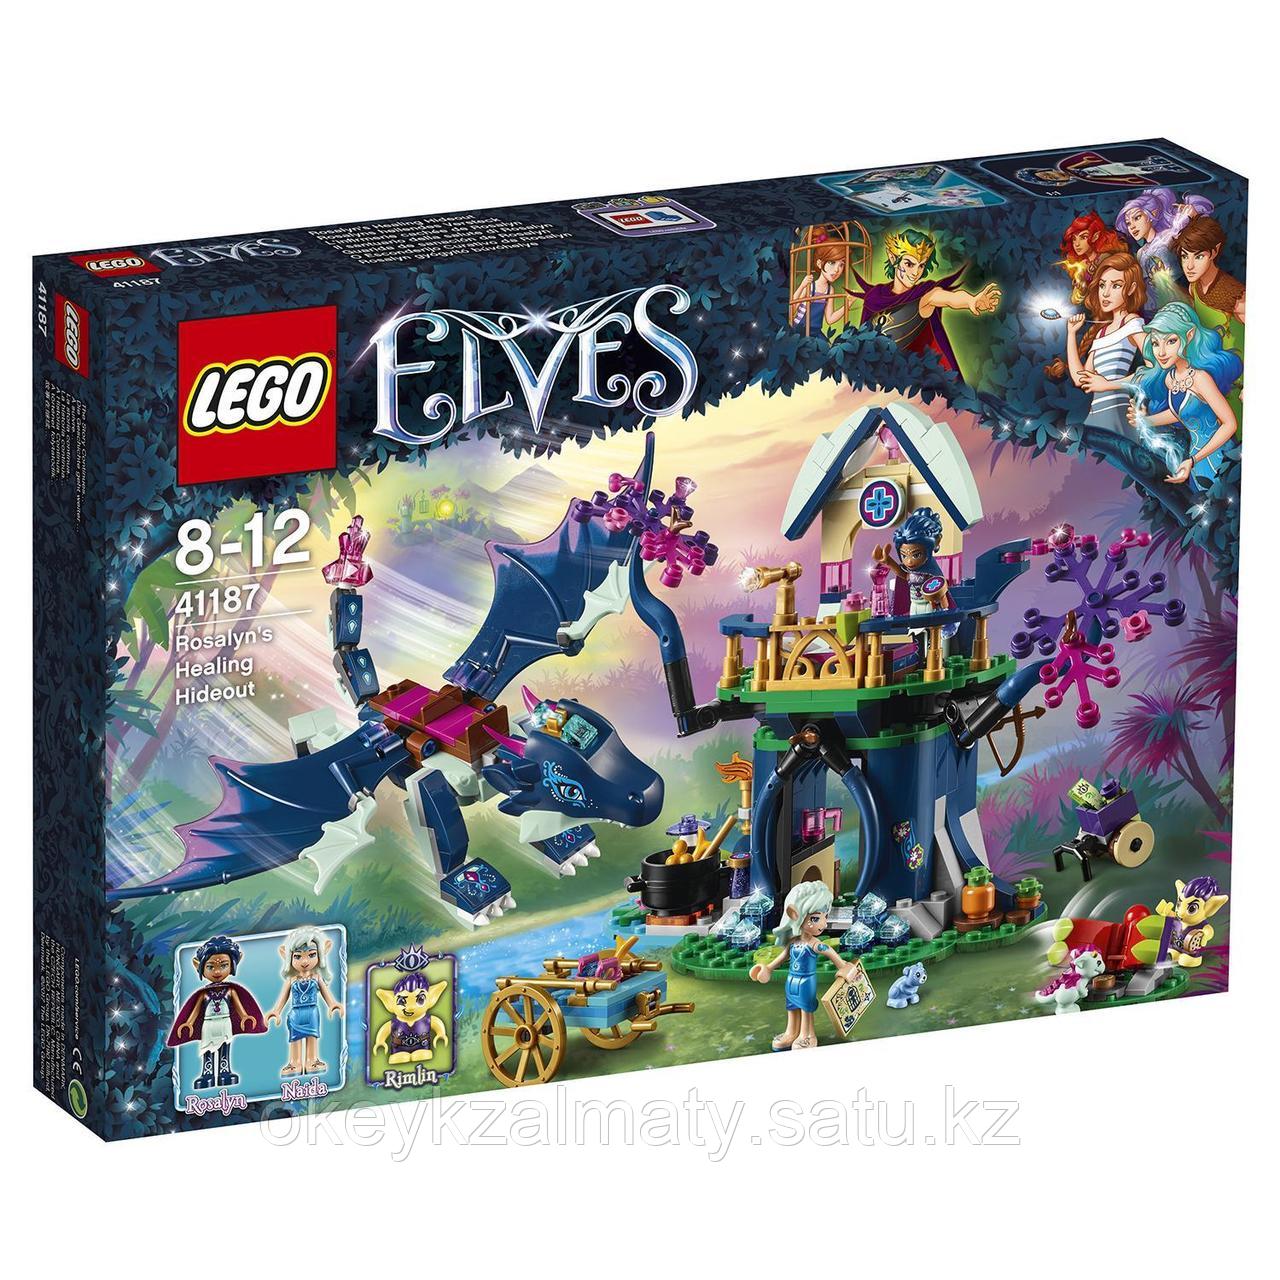 LEGO Elves: Тайная лечебница Розалин 41187